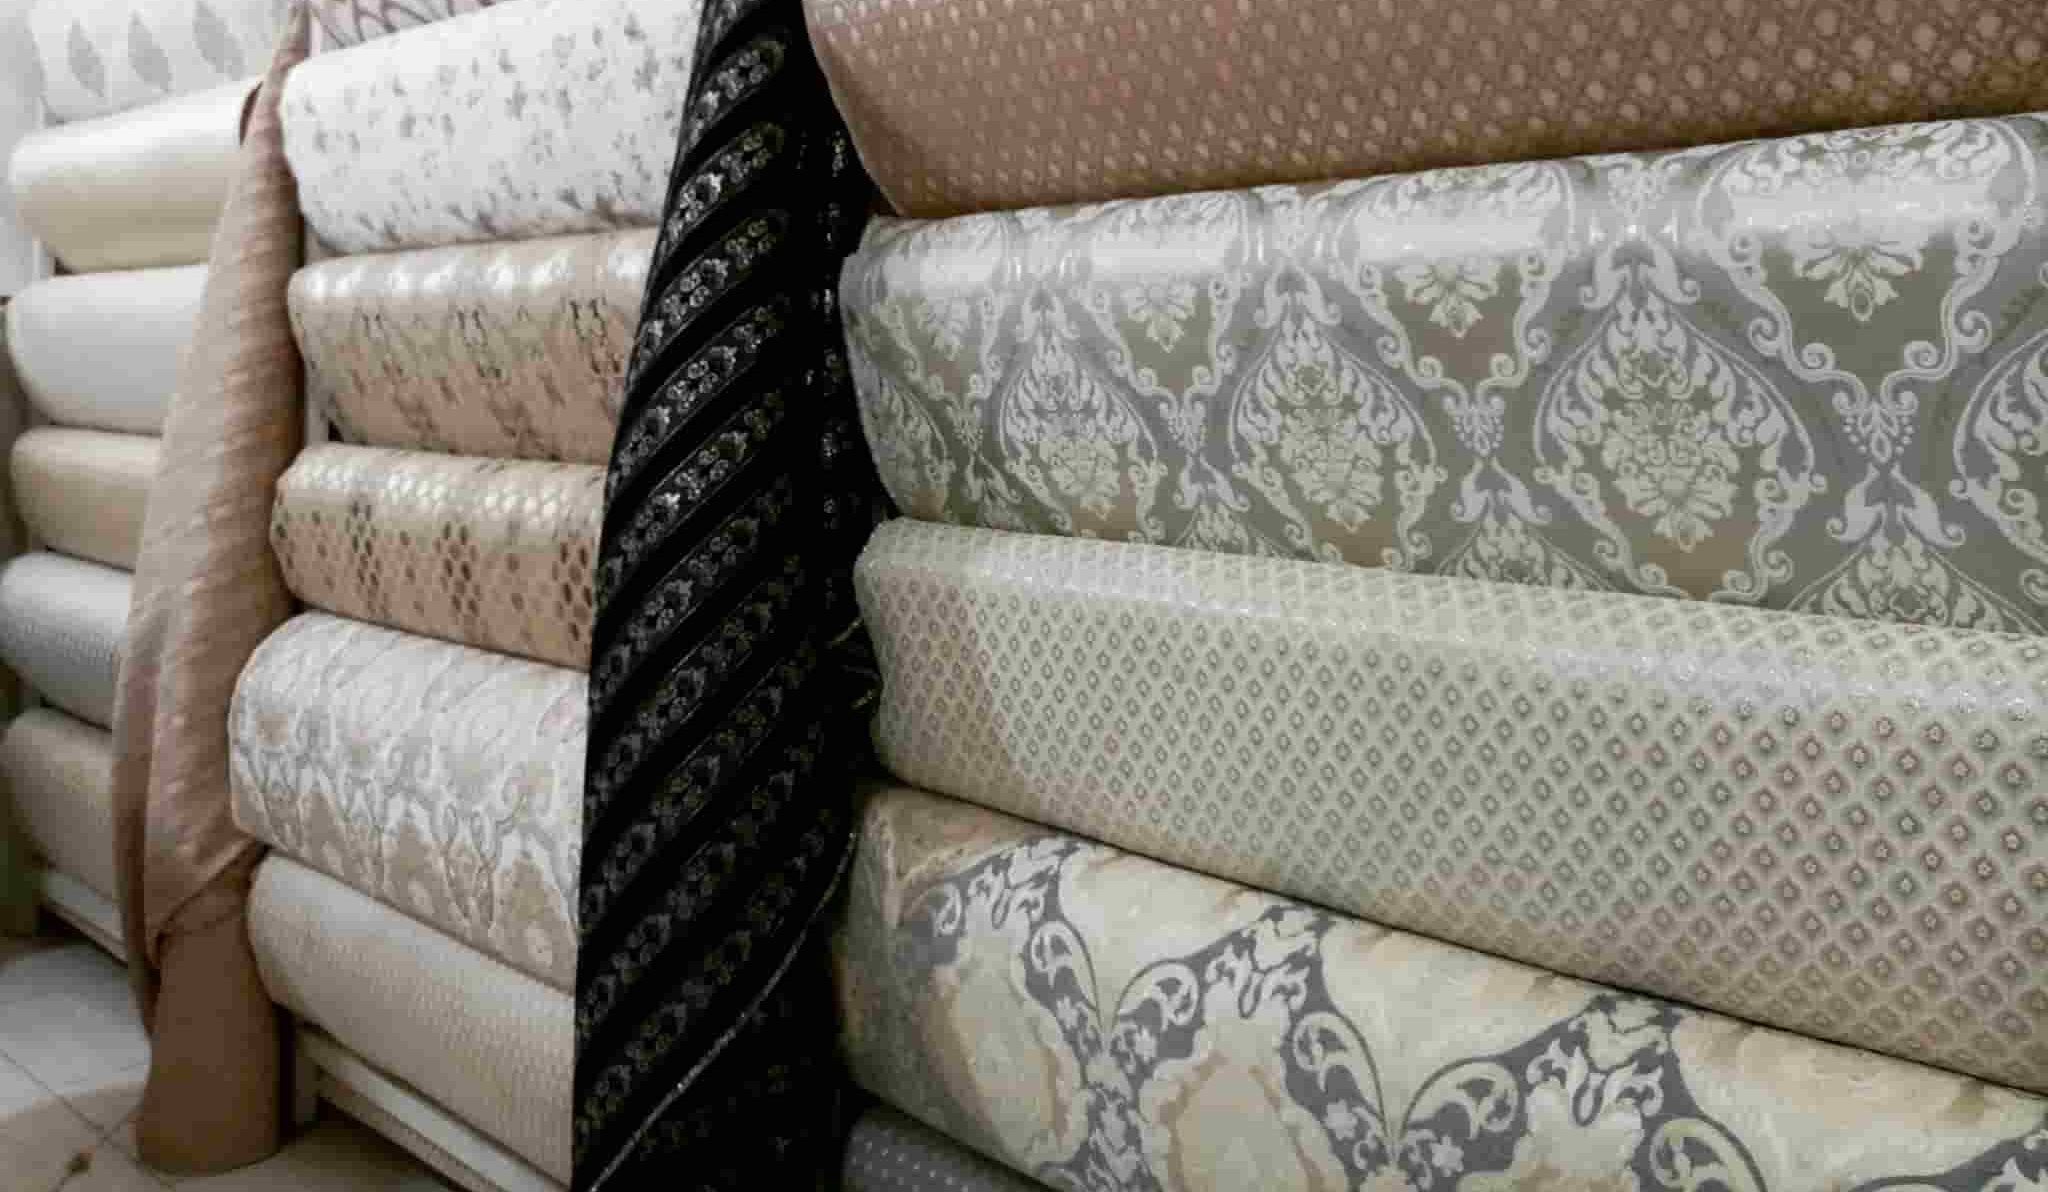 Sofa Fabric Dubai